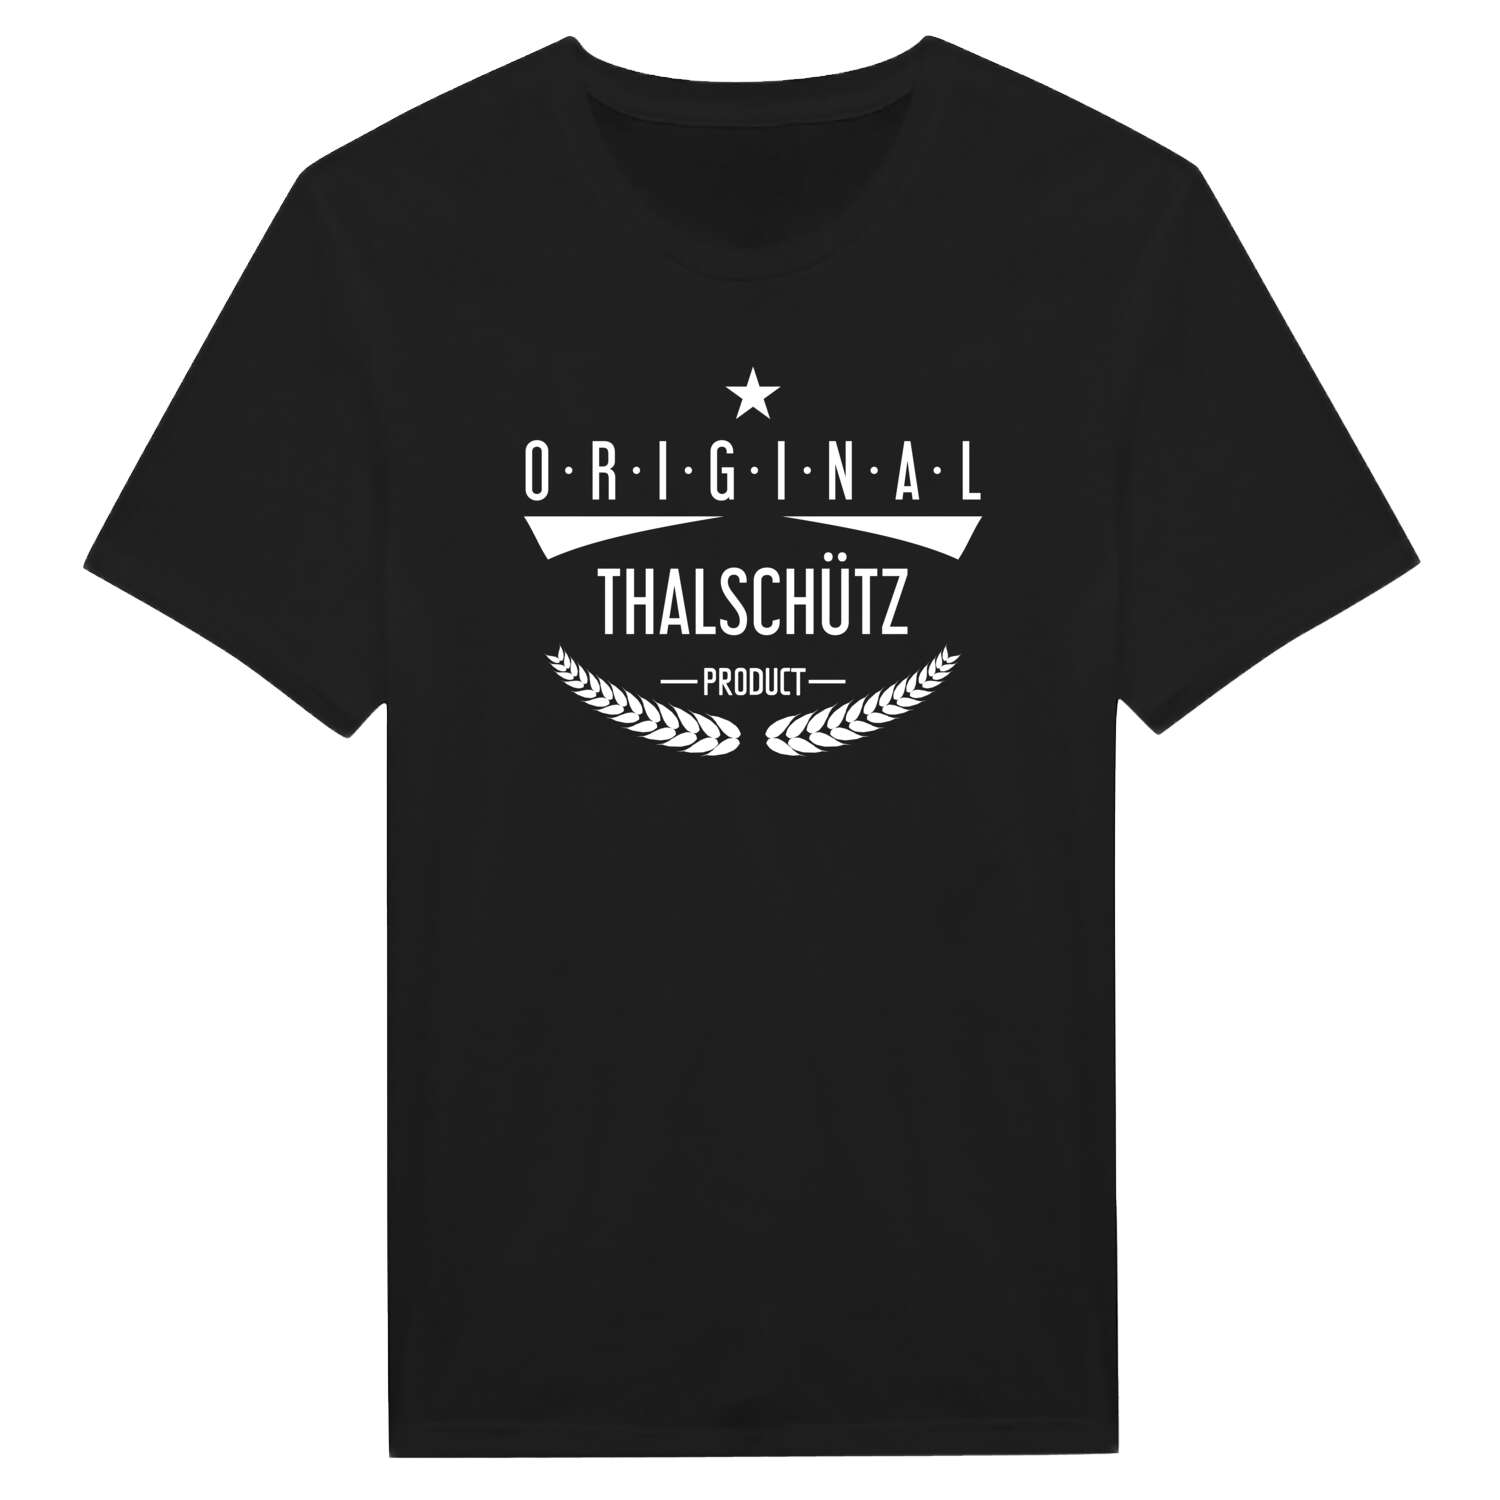 Thalschütz T-Shirt »Original Product«